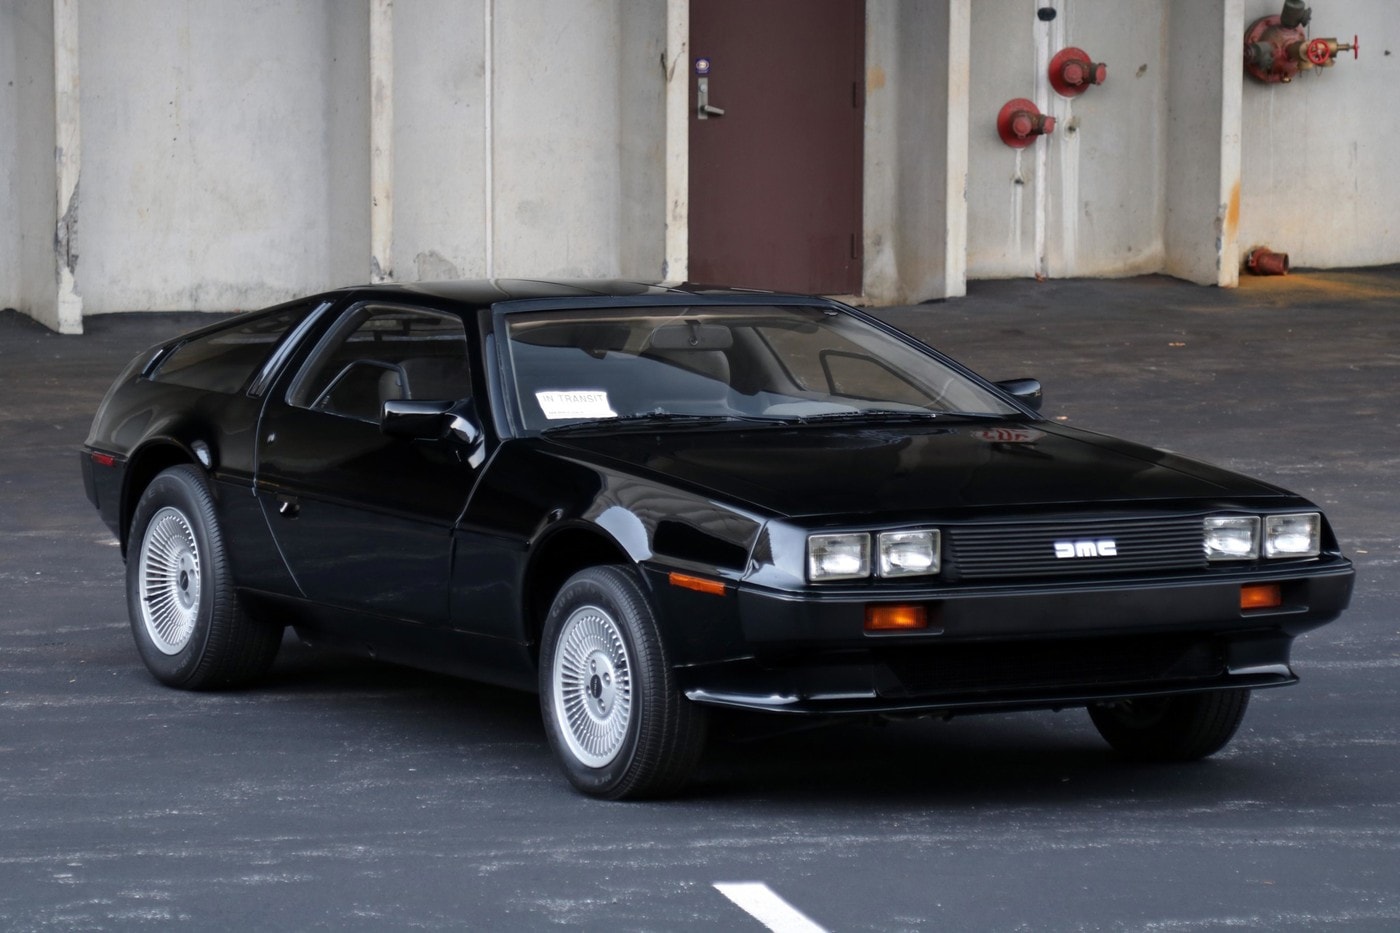 罕見 1981 年經典車款 DeLorean DMC-12 於拍賣會中正式賣出